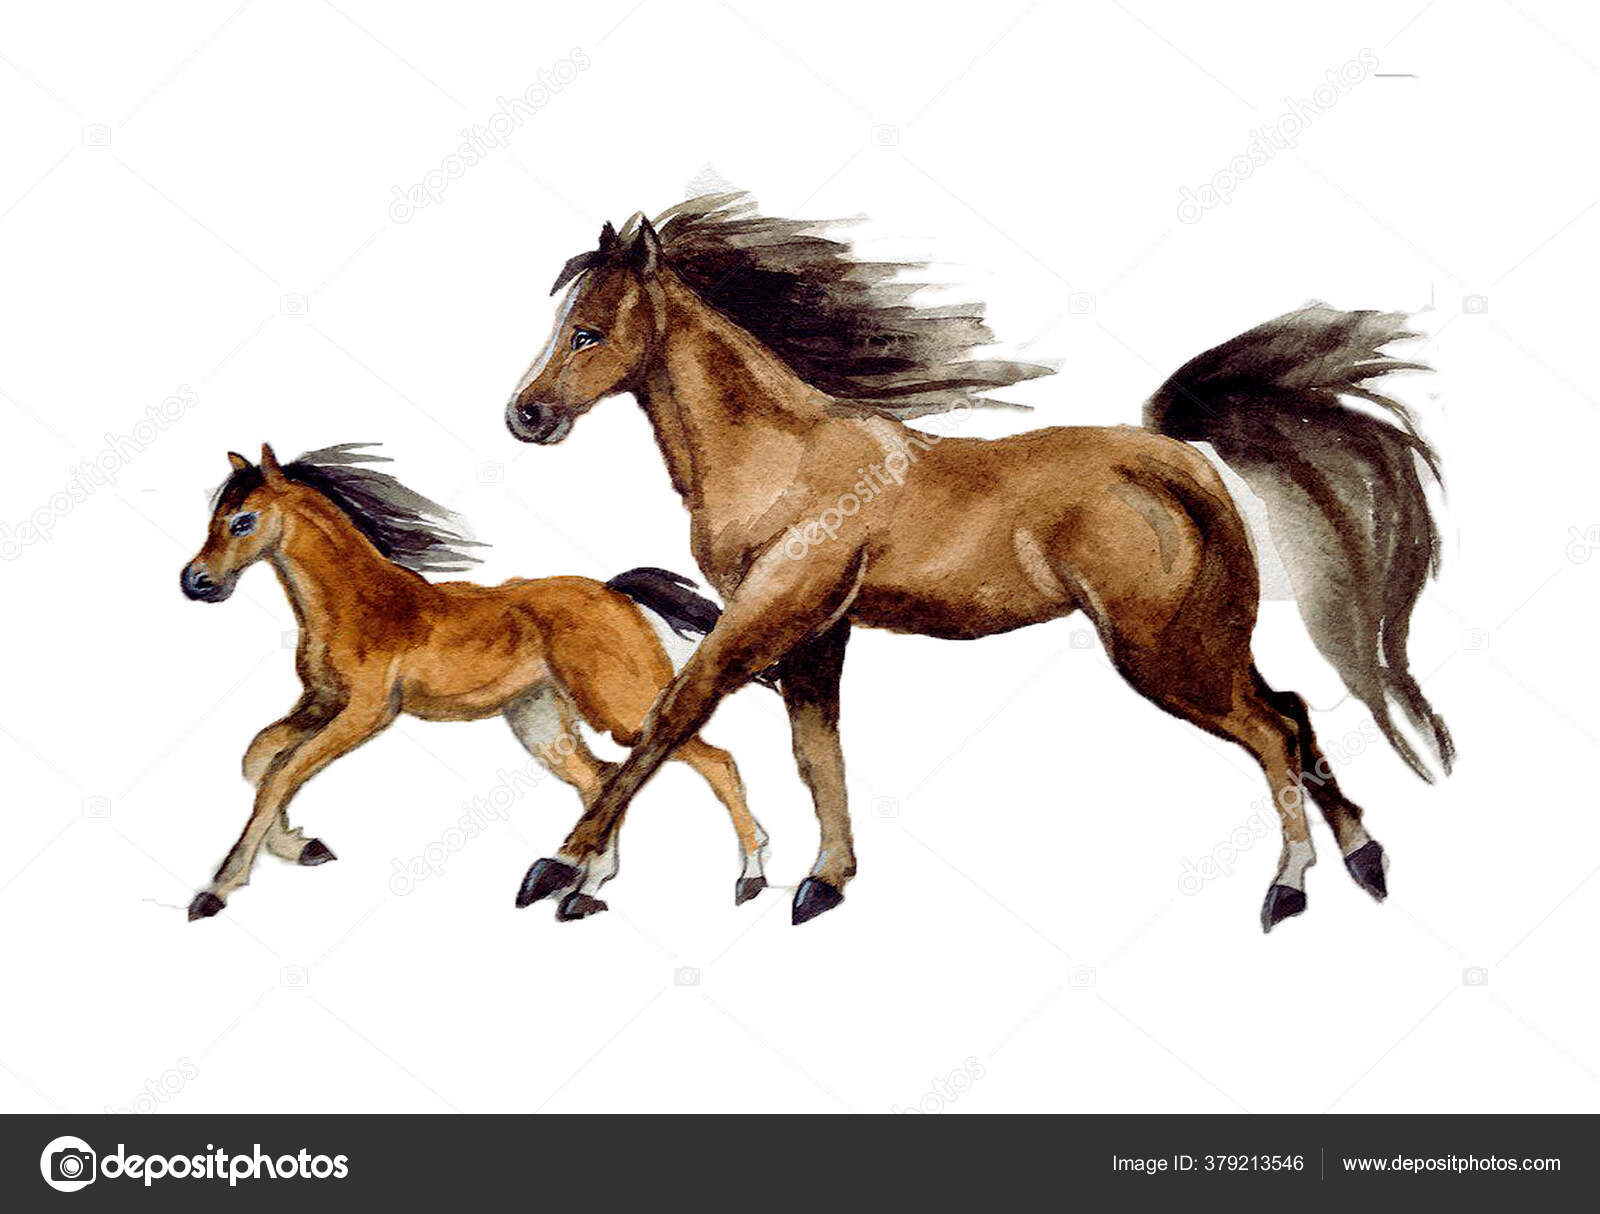 sówatercolor: DESENHO - Desenho do cavalo